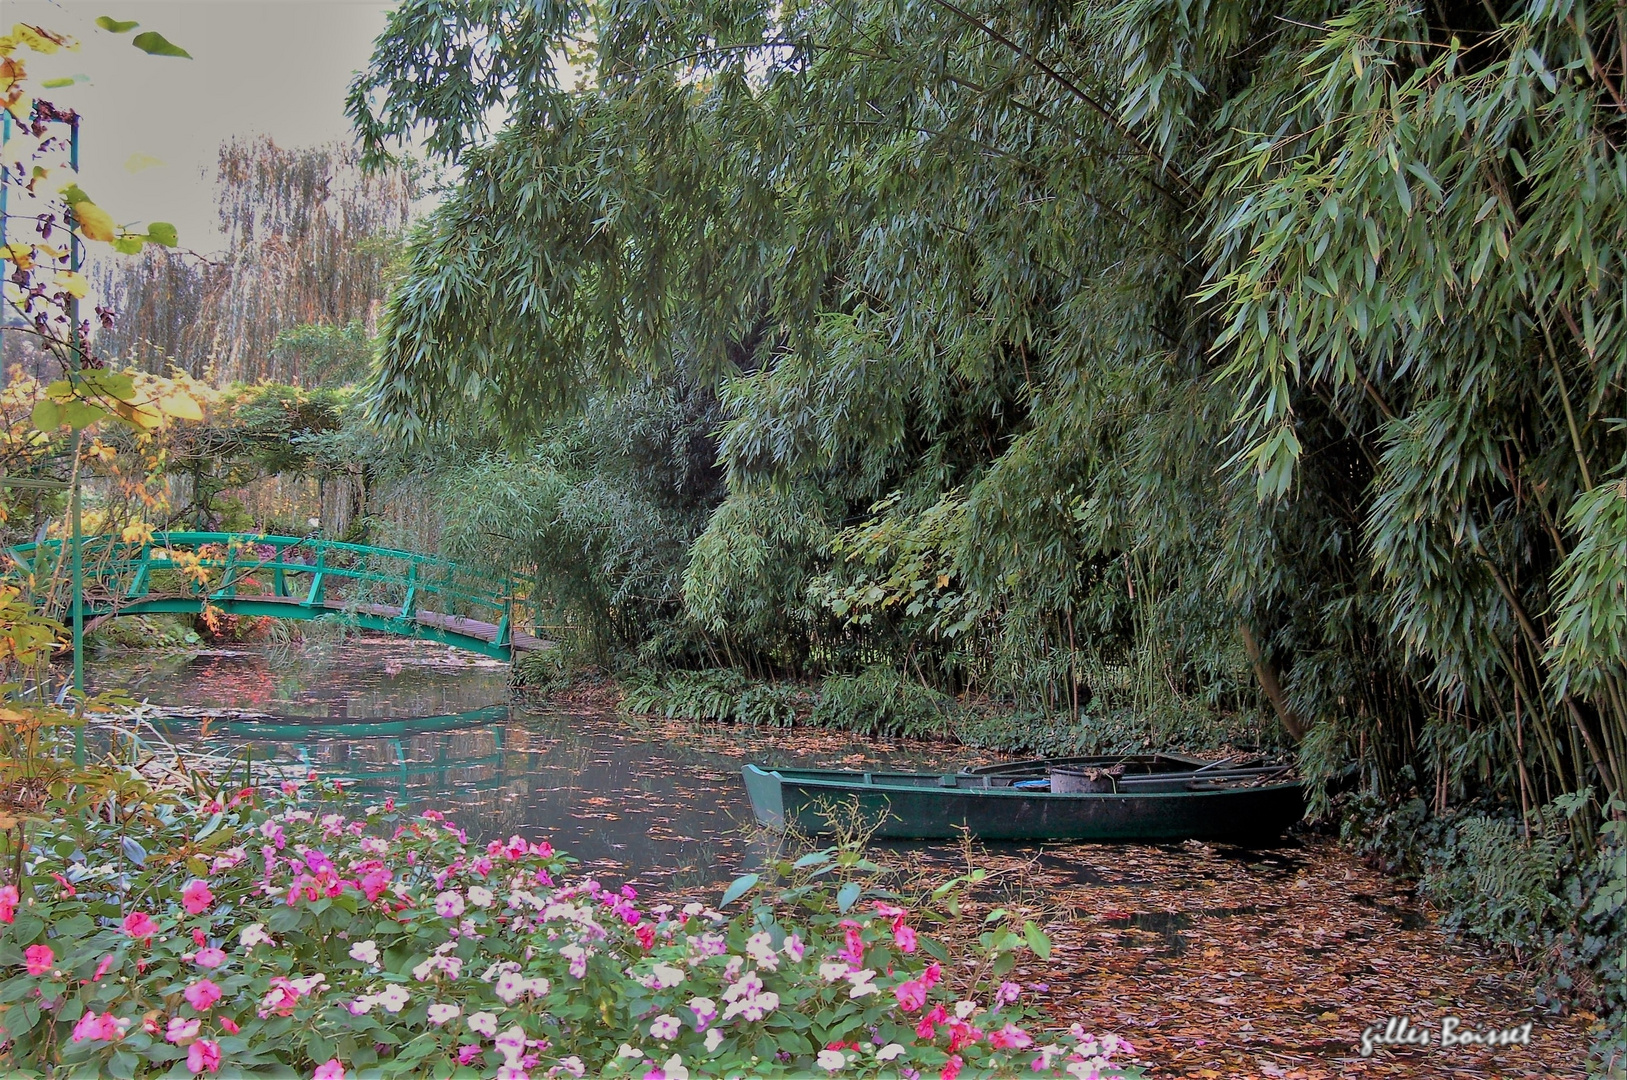 l'automne dans le jardin de Monet 3